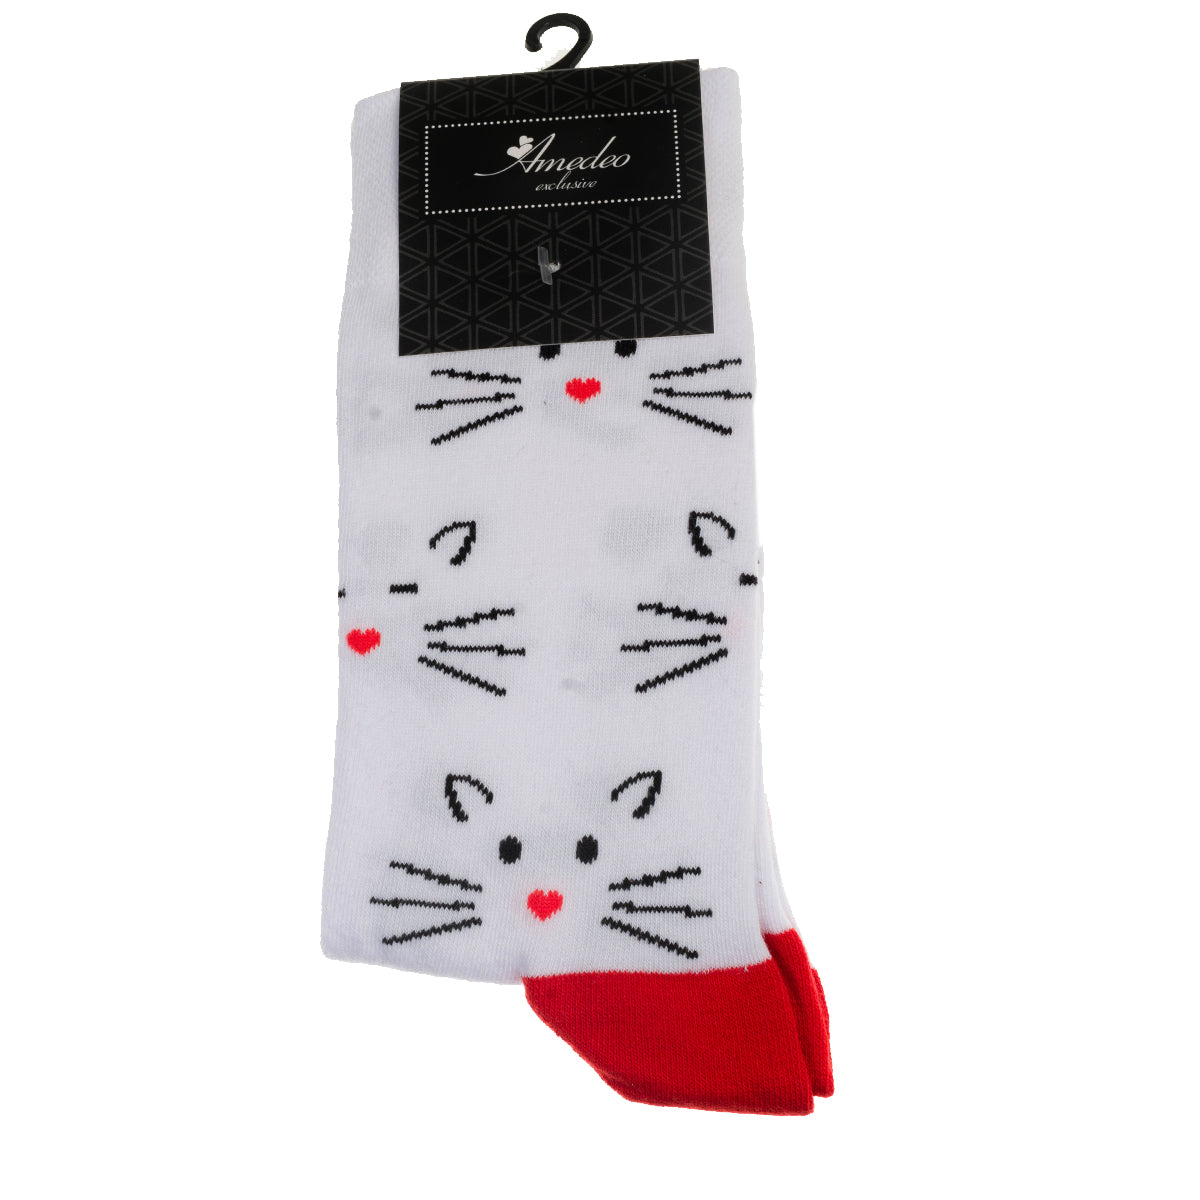 White Printed-European Made - Egyptian Cotton Socks - Premium Cotton Fun socks with Soft Elastic